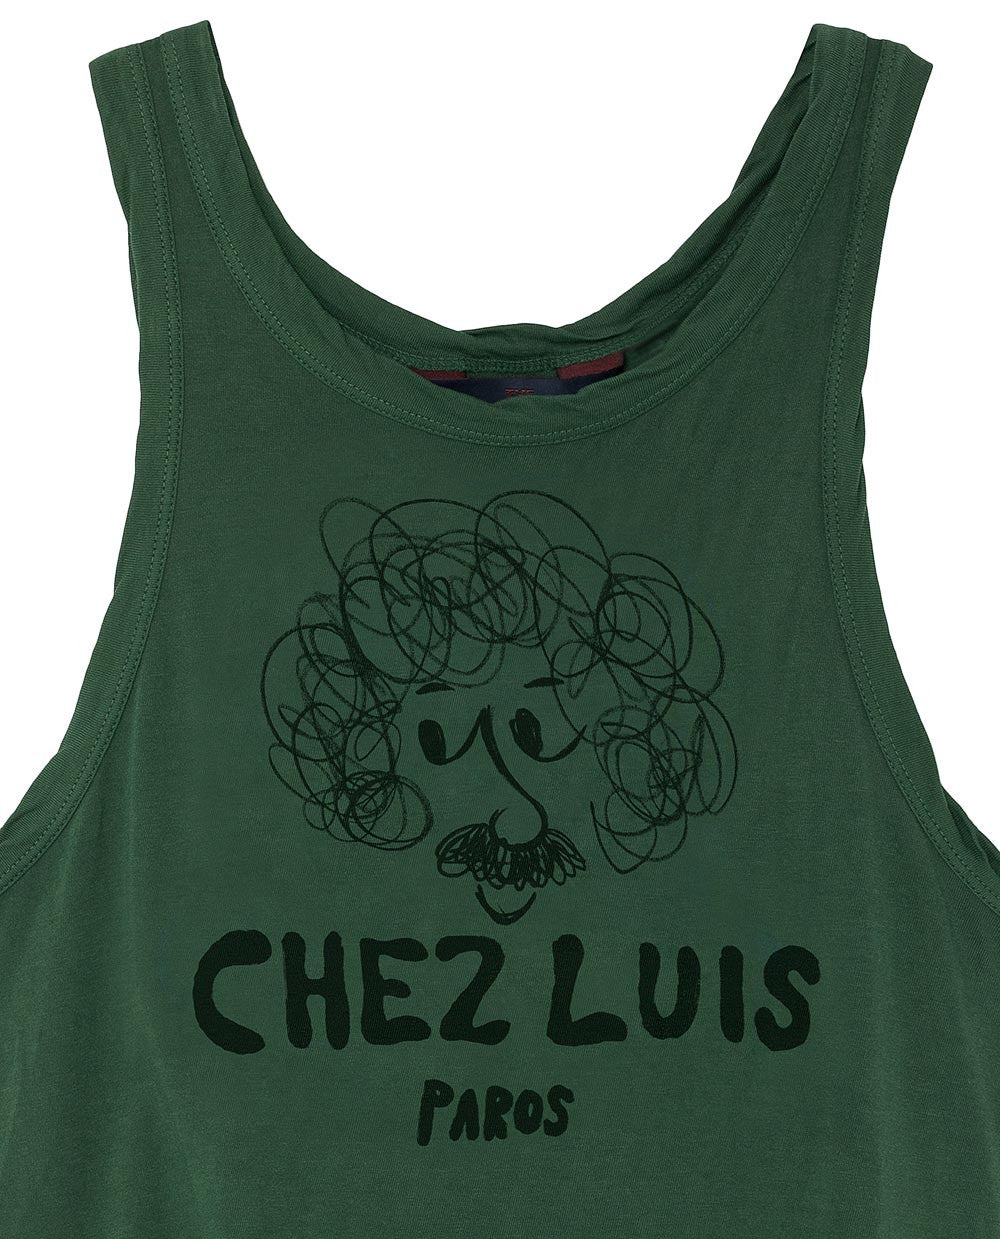 Boys Military Green "Chez Luis" Vest - CÉMAROSE | Children's Fashion Store - 3